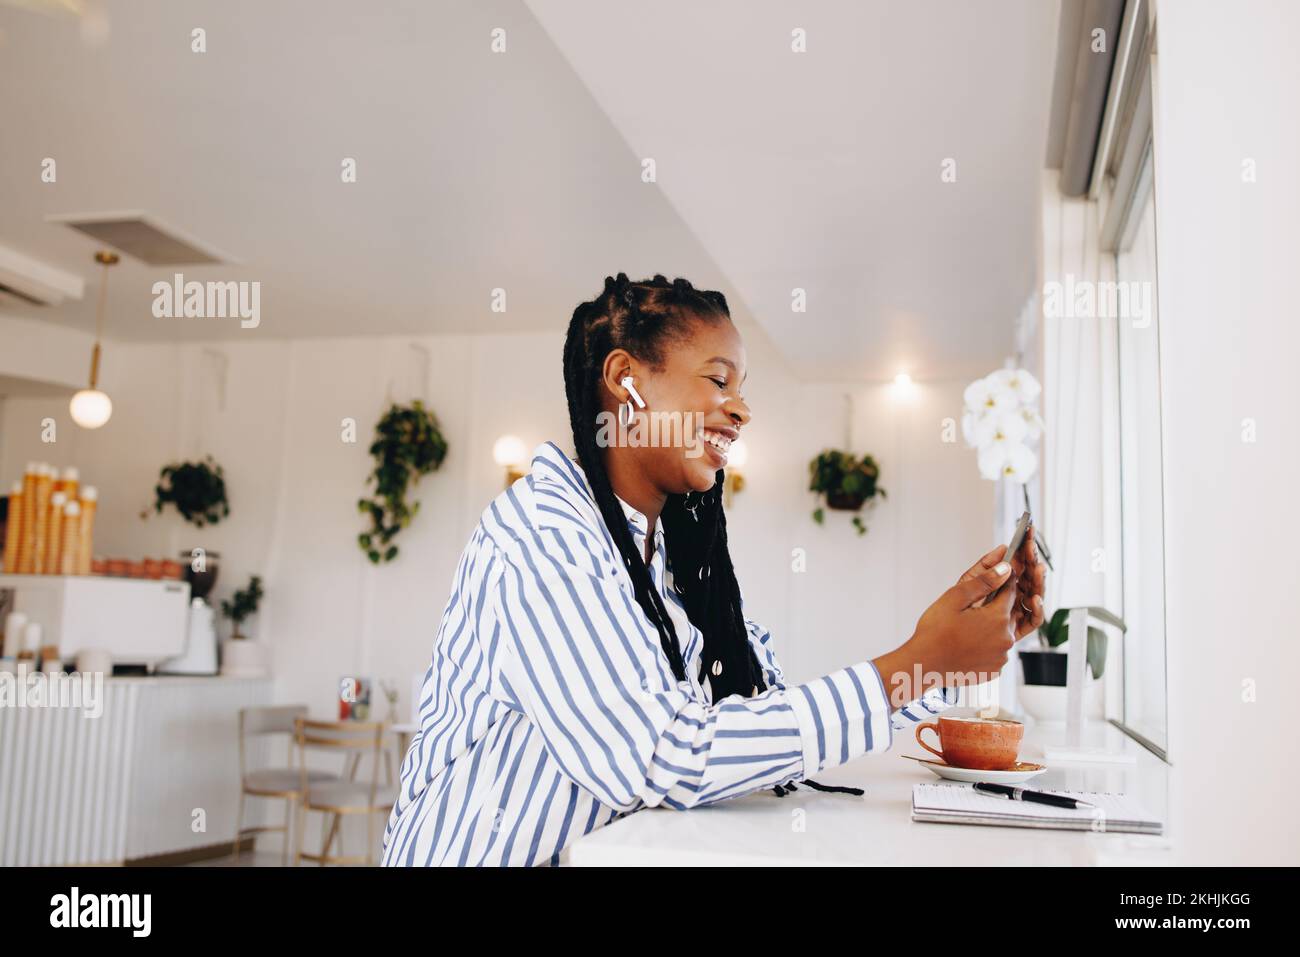 Alegre mujer de negocios negra haciendo una videollamada en un smartphone mientras trabaja en una cafetería. Feliz joven empresaria sonriendo mientras que el vídeo chateaba con Foto de stock